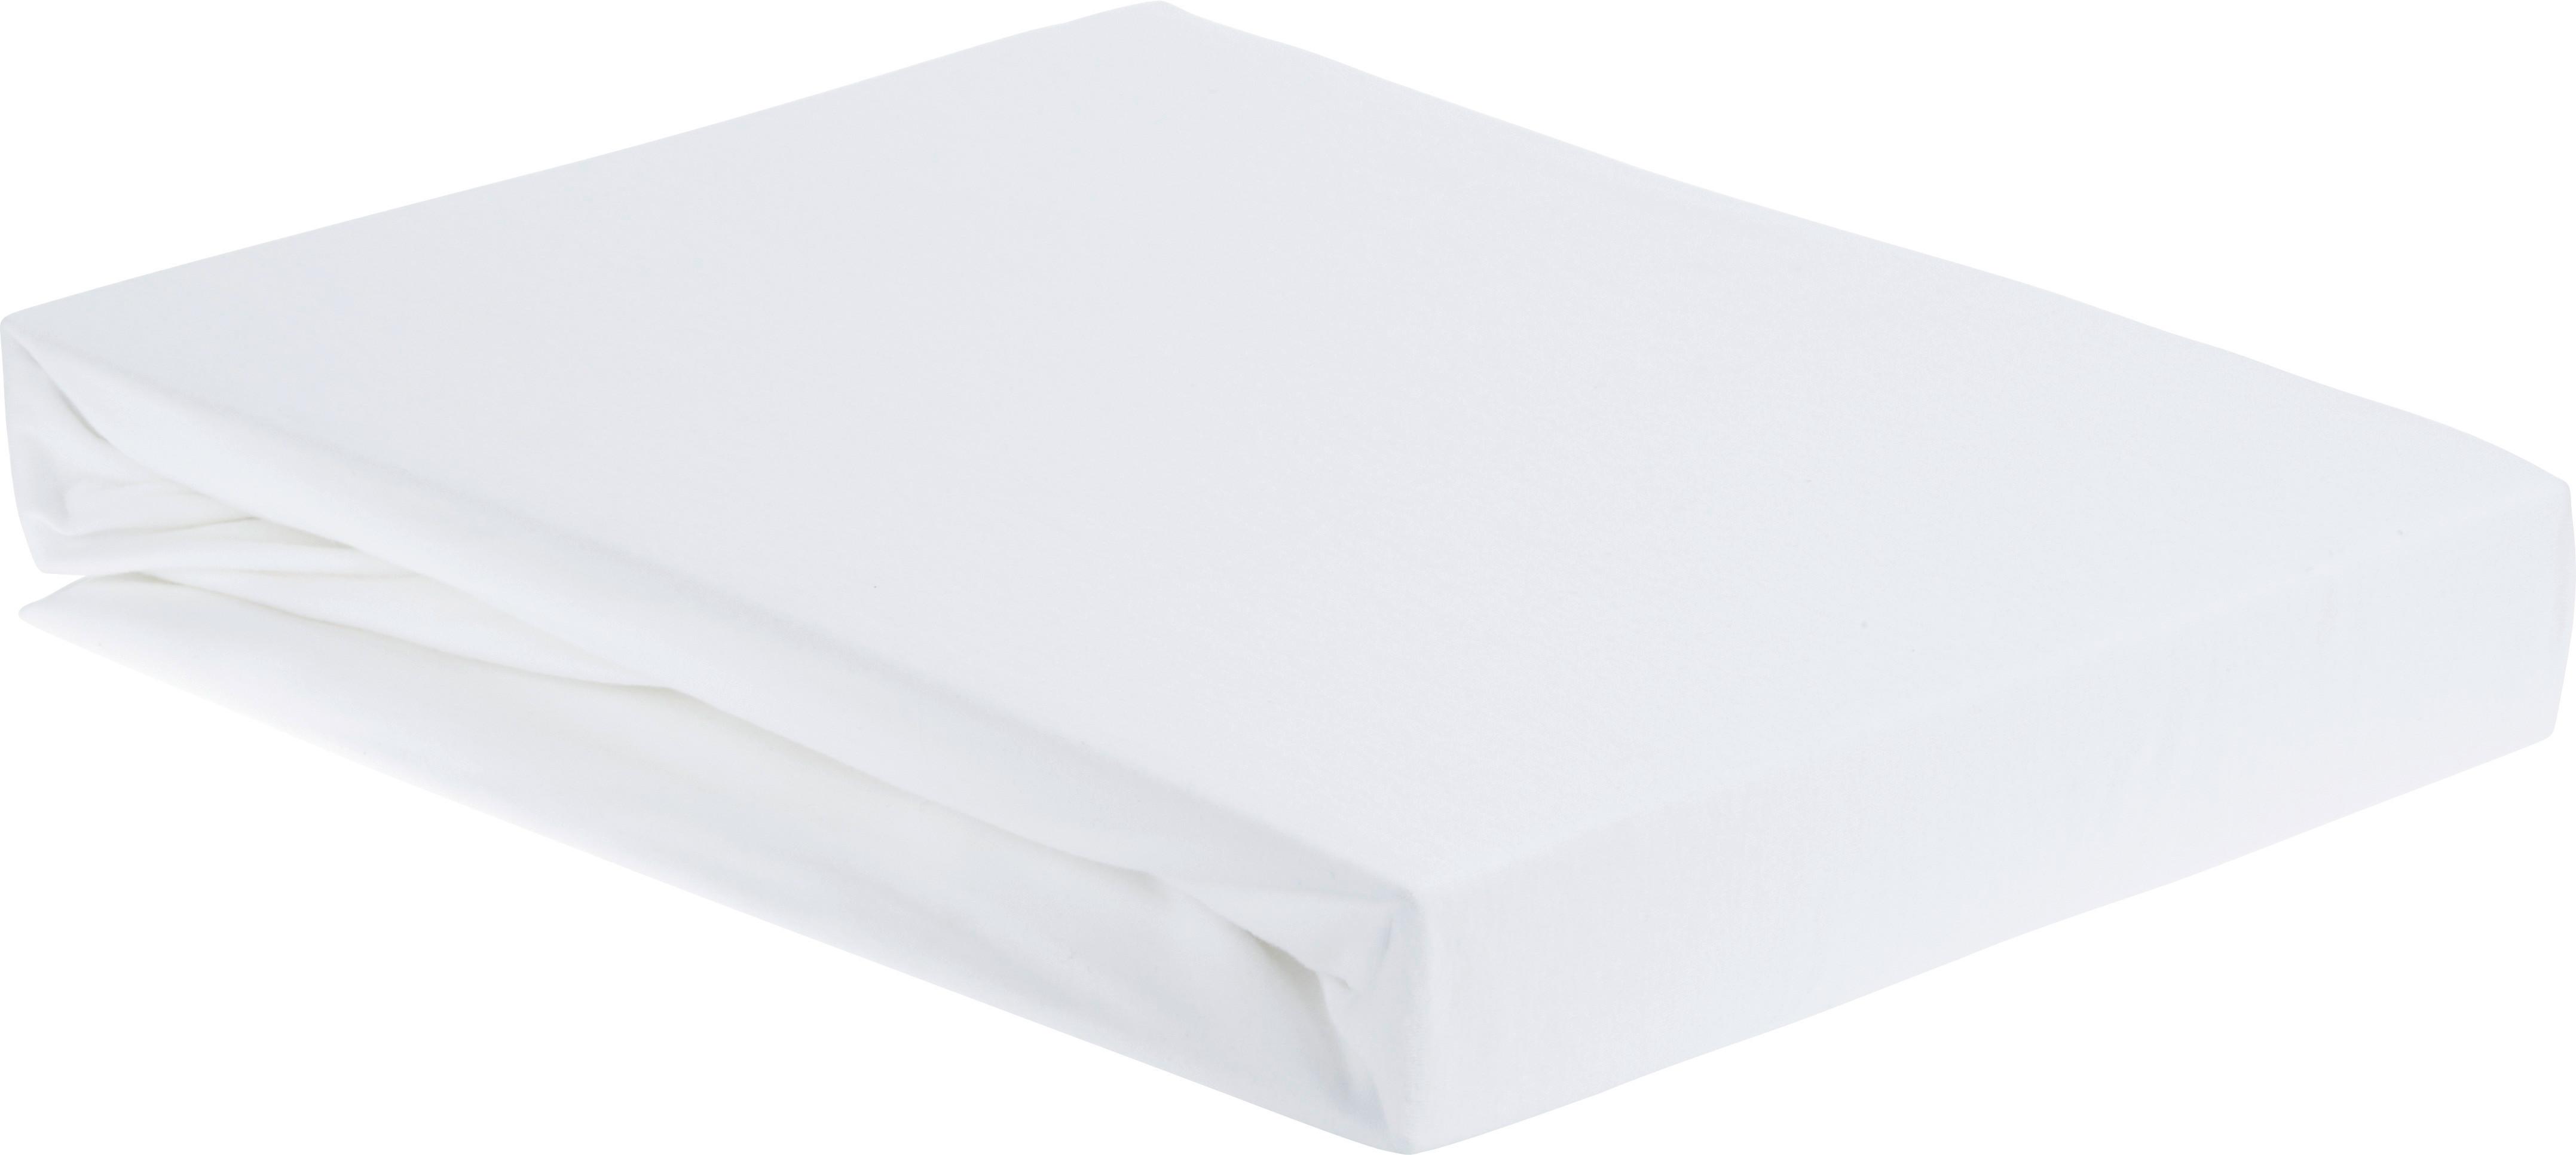 Elastické Prostěradlo Elasthan, 100/200/28cm, Bílá - bílá, textil (100/200/28cm) - Premium Living